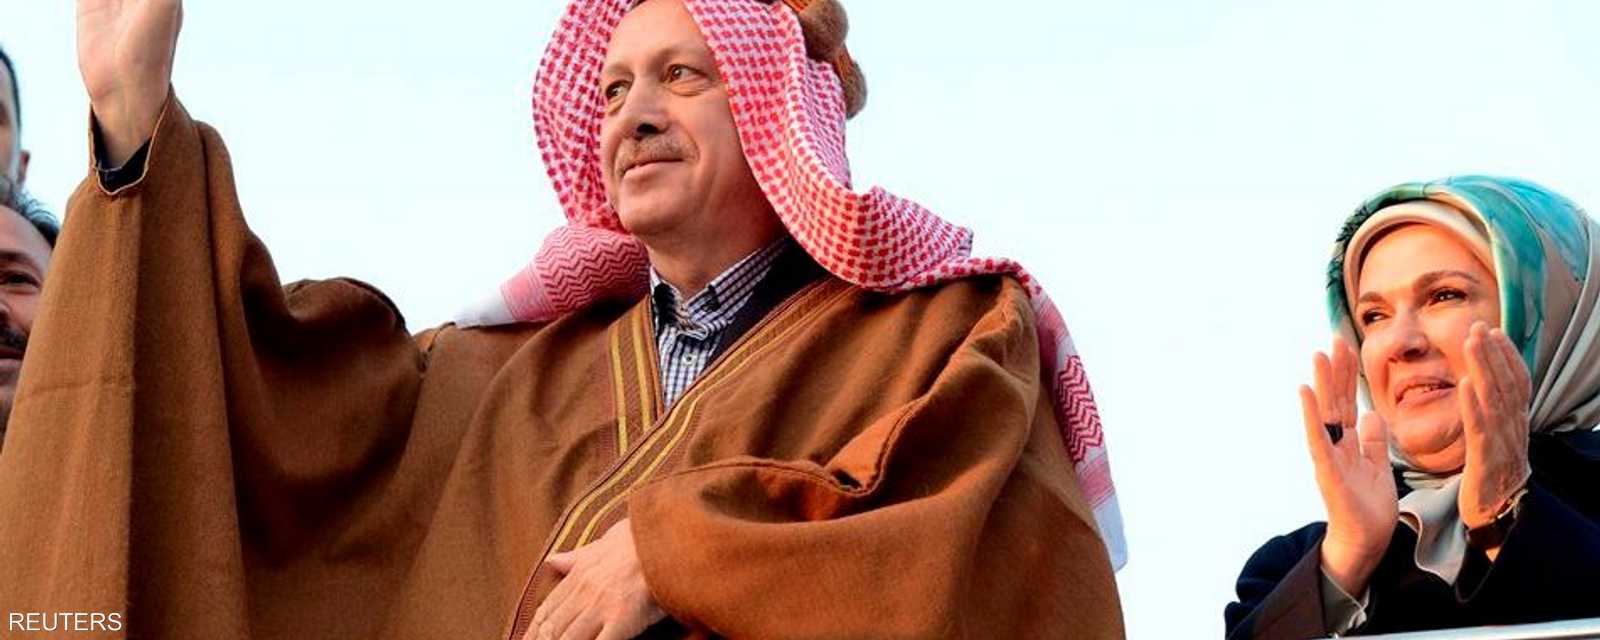 ارتدى رئيس الوزراء التركي، رجب طيب أردوغان، العباية العربية التقليدية خلال زيارة لمخيم أكاكالي للاجئين السوريين على الحدود التركية السورية.